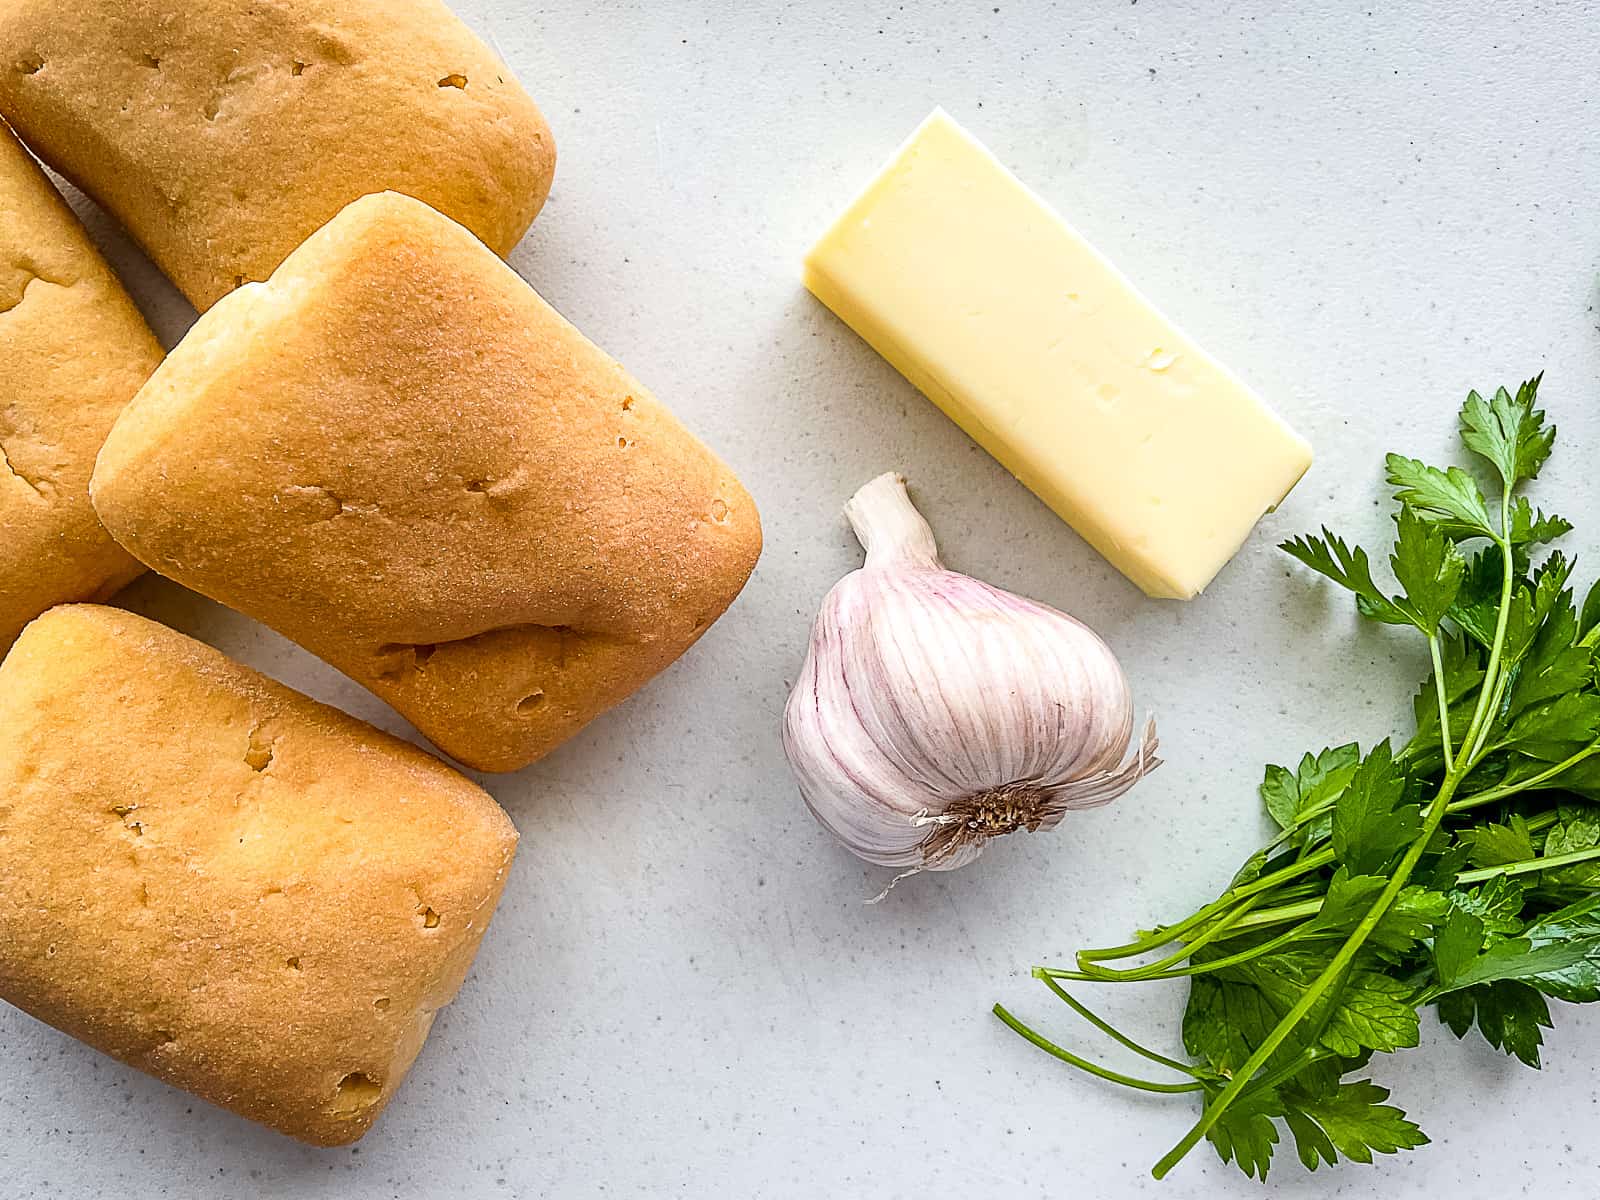 Ingredients for gluten-free garlic bread.